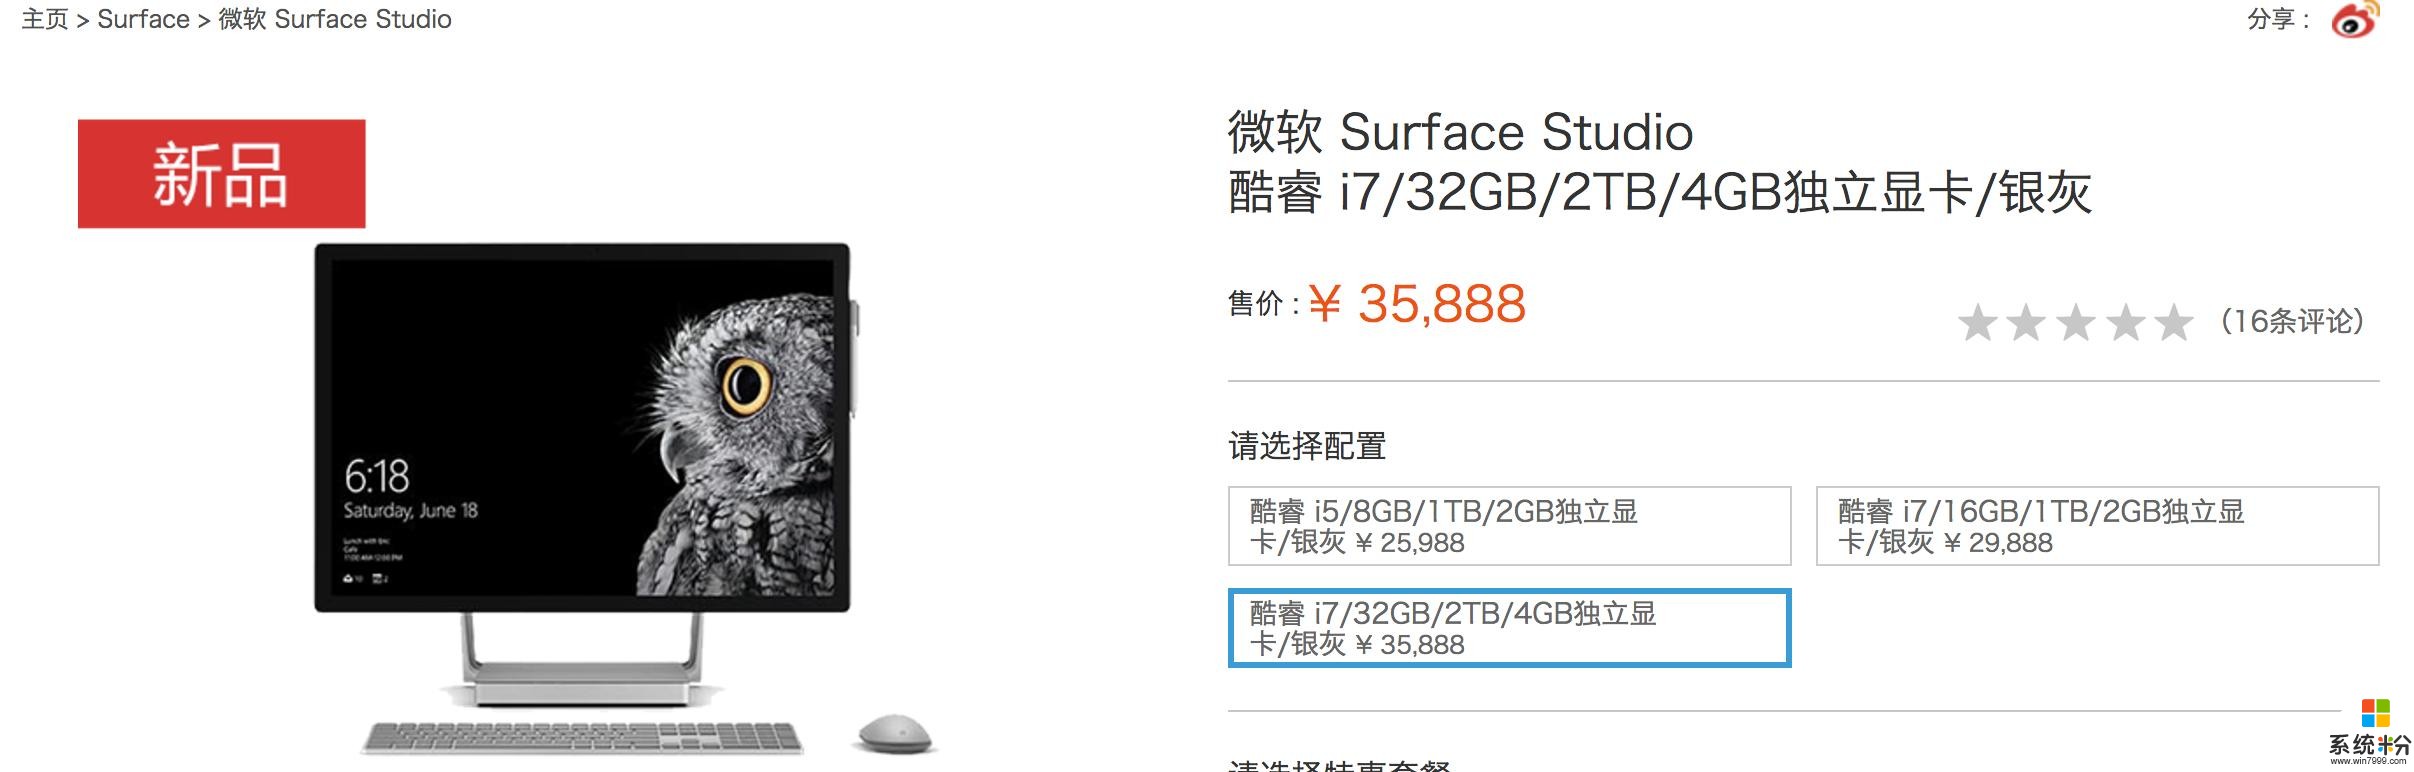 微软中国官网新上架三款surface新品5888元起(9)